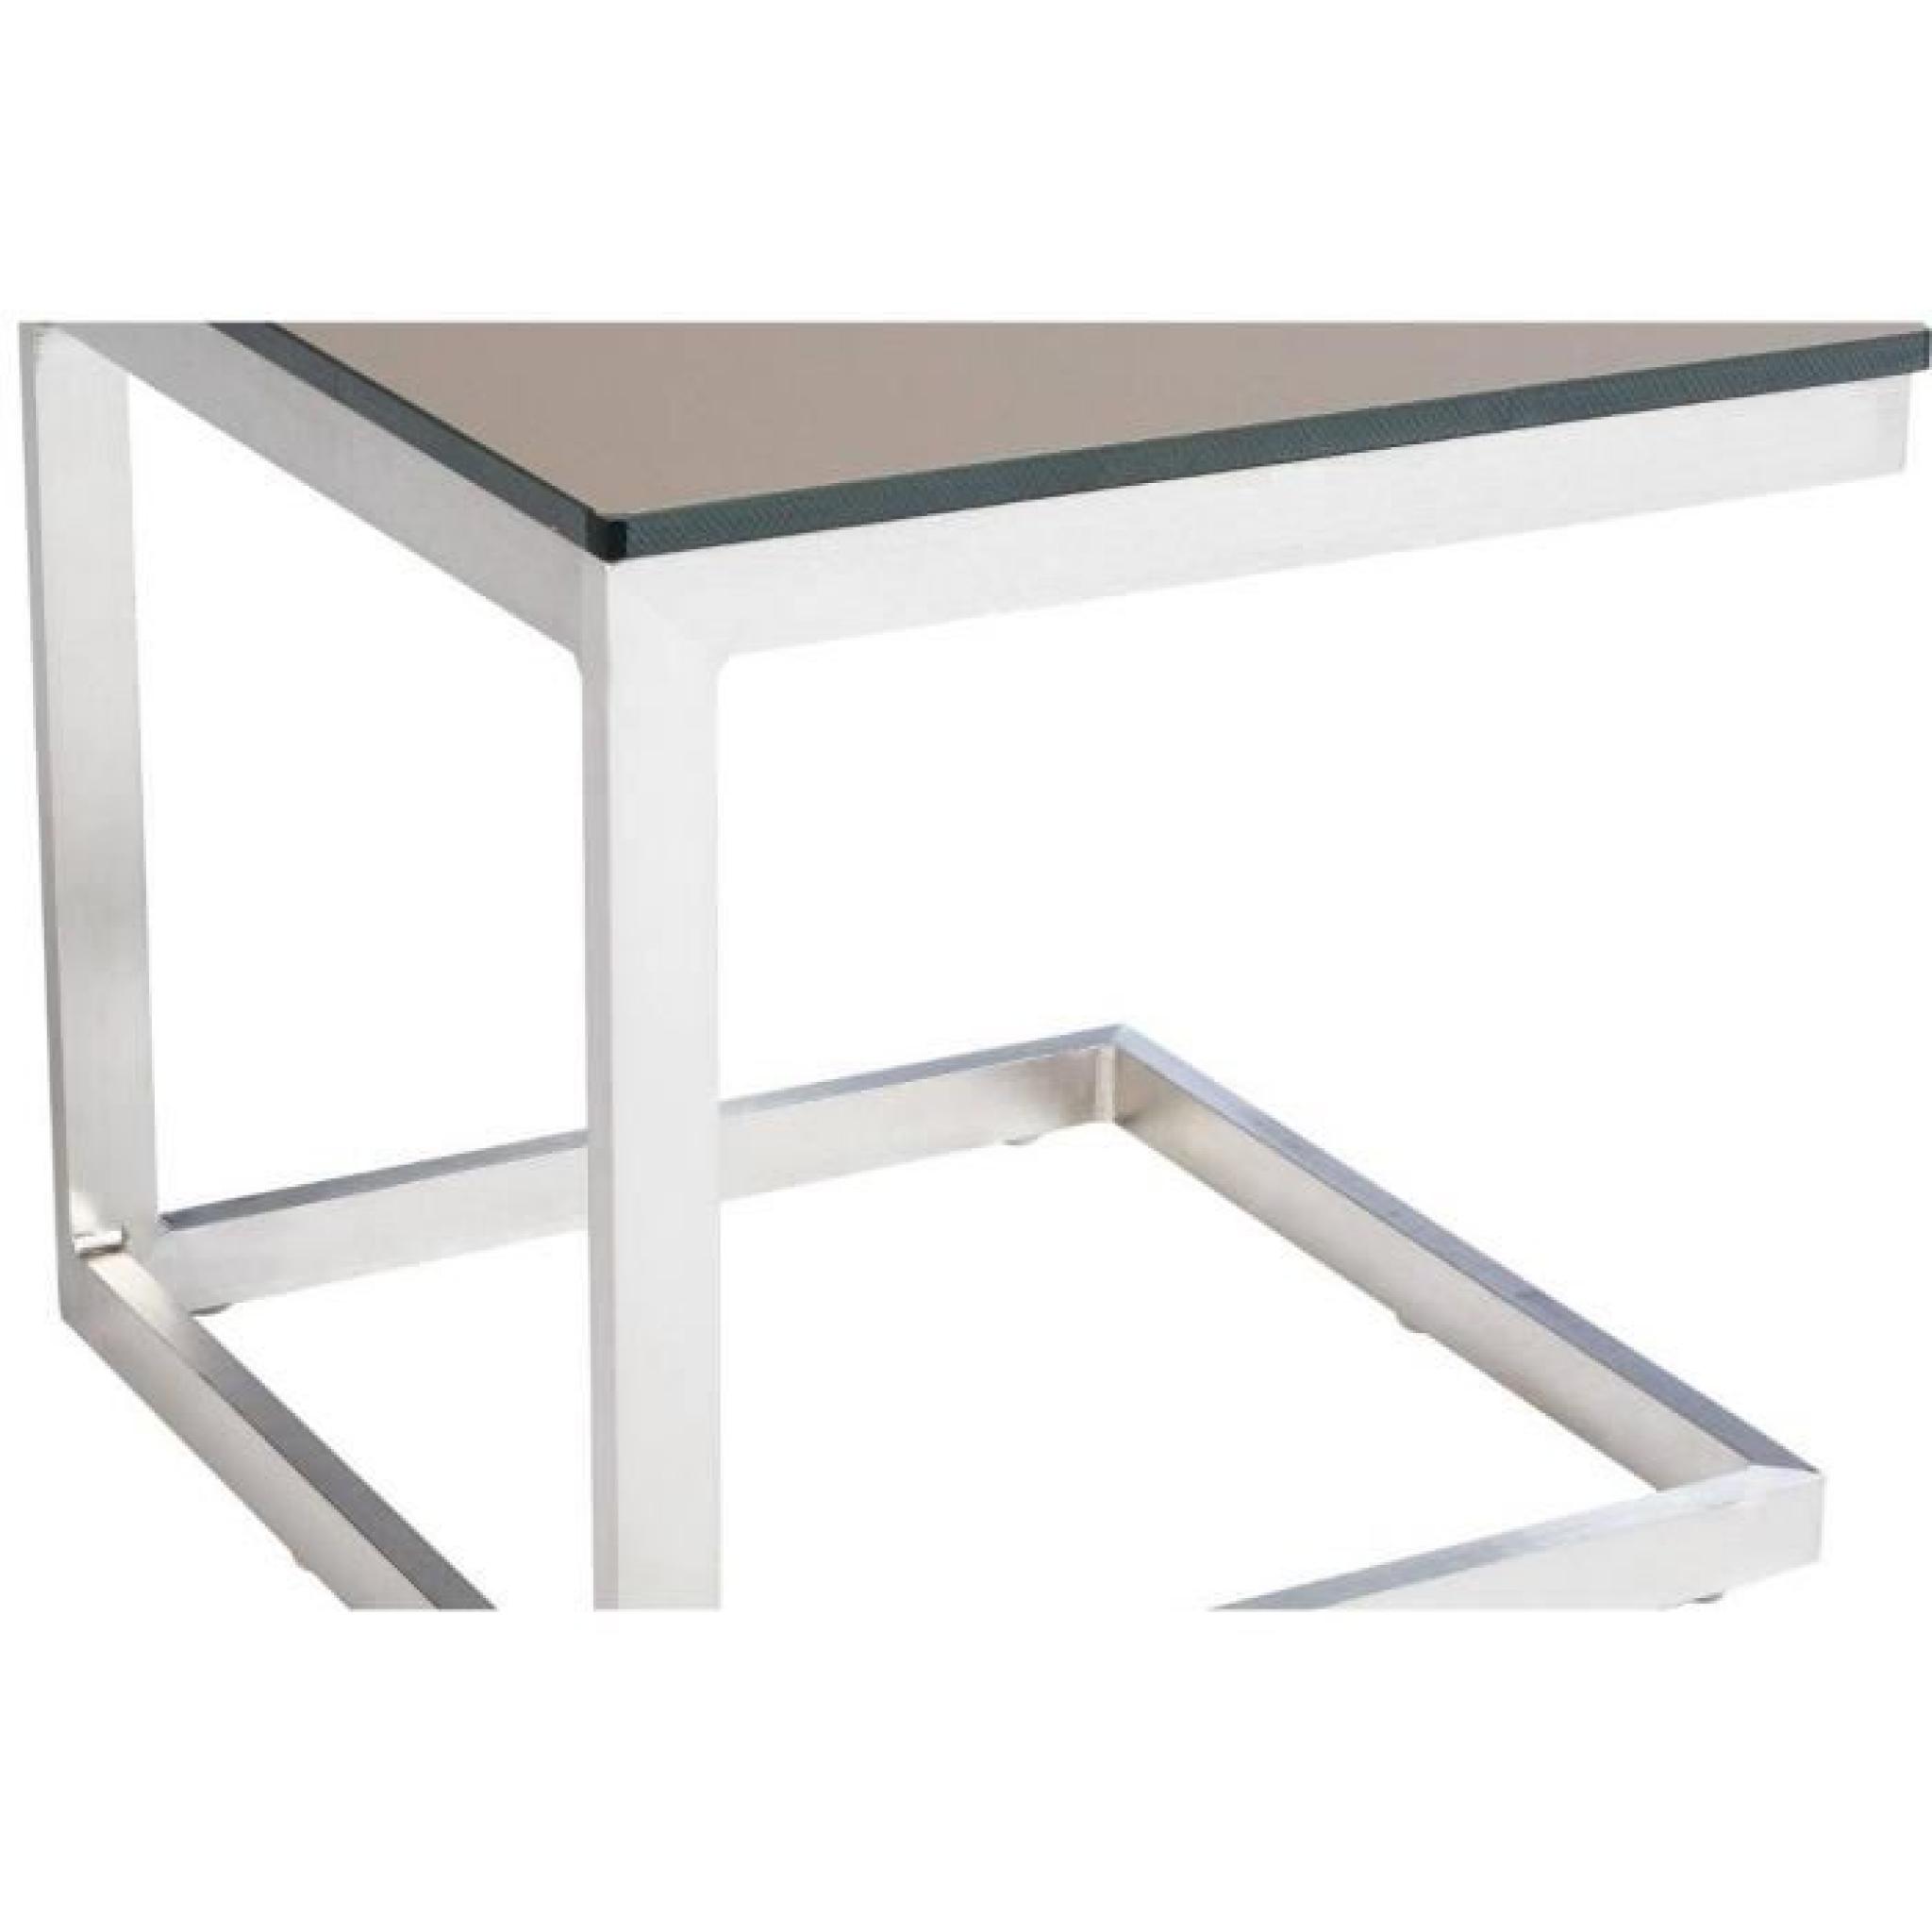 Table d'appoint en Aluminium, coloris taupe - Dim : L 40 x P 40 x H 38cm 